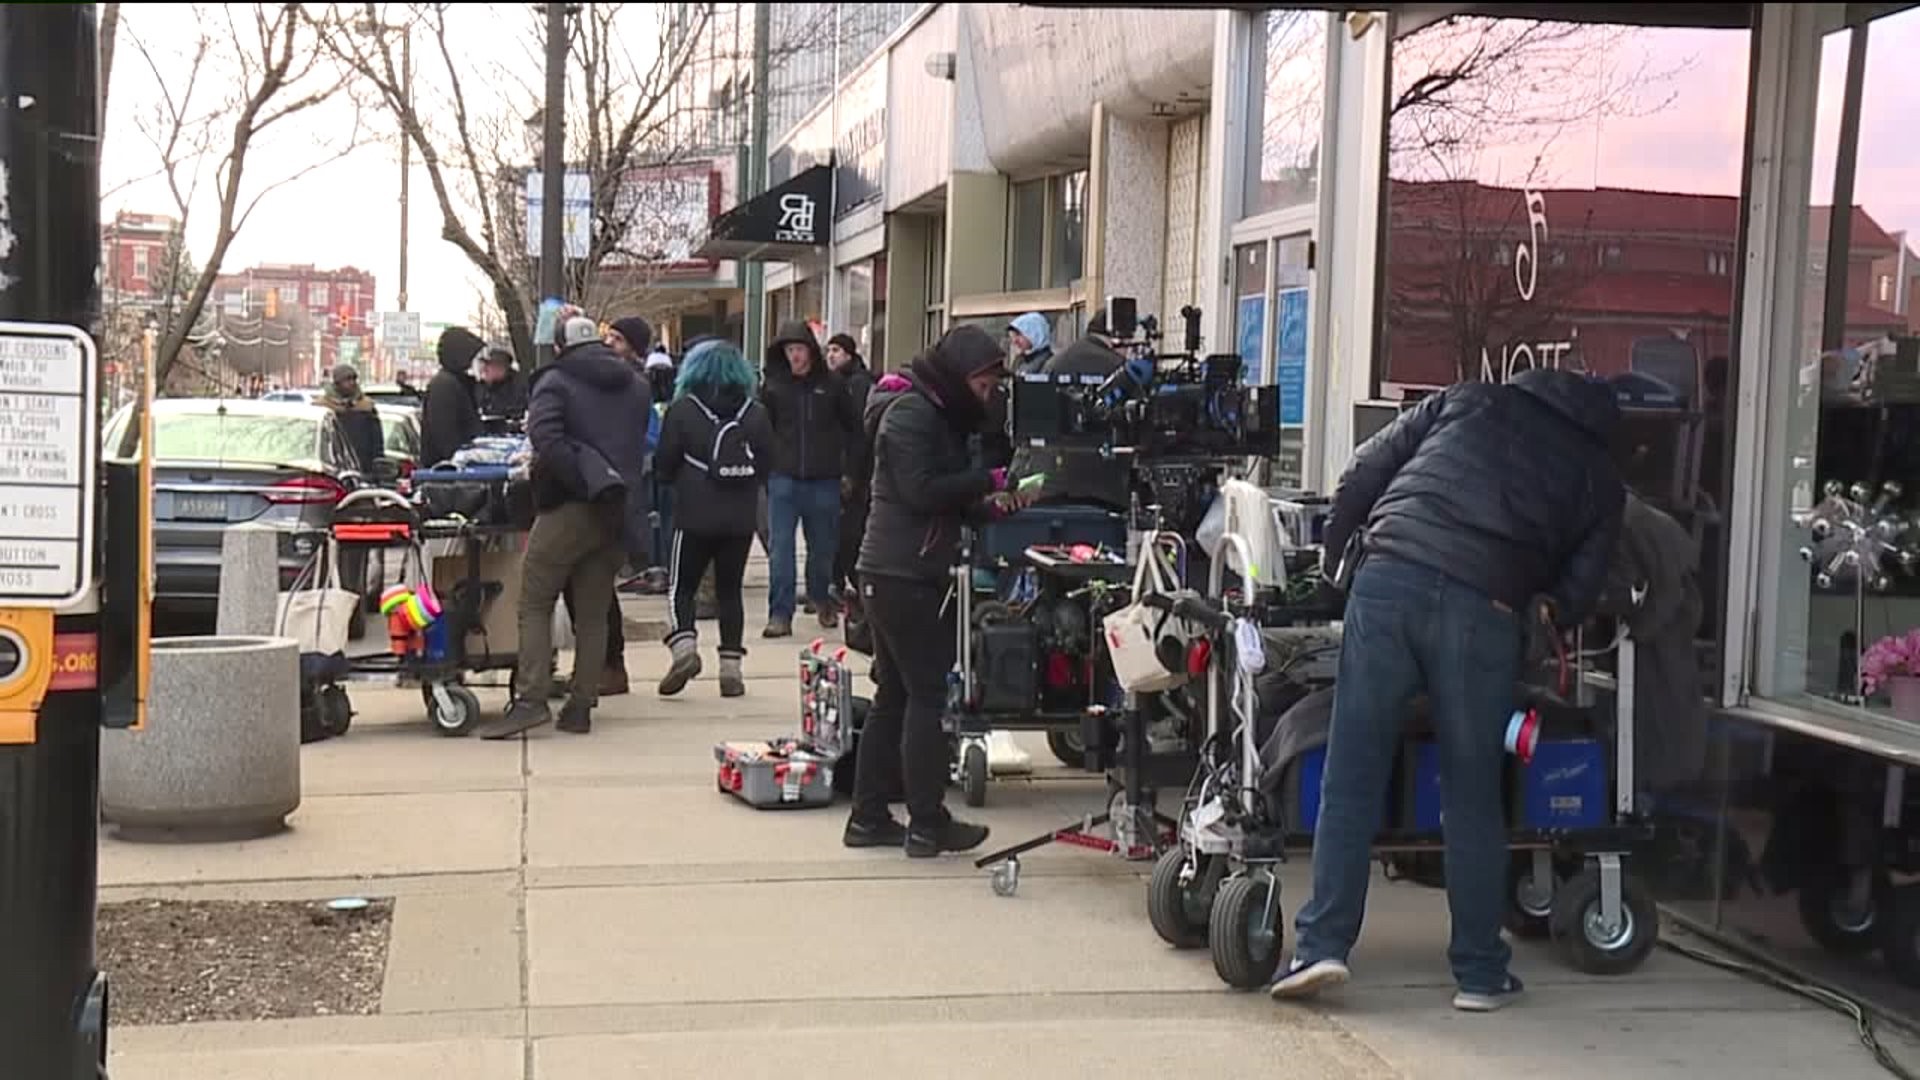 'Action!'  Film Crew in Scranton